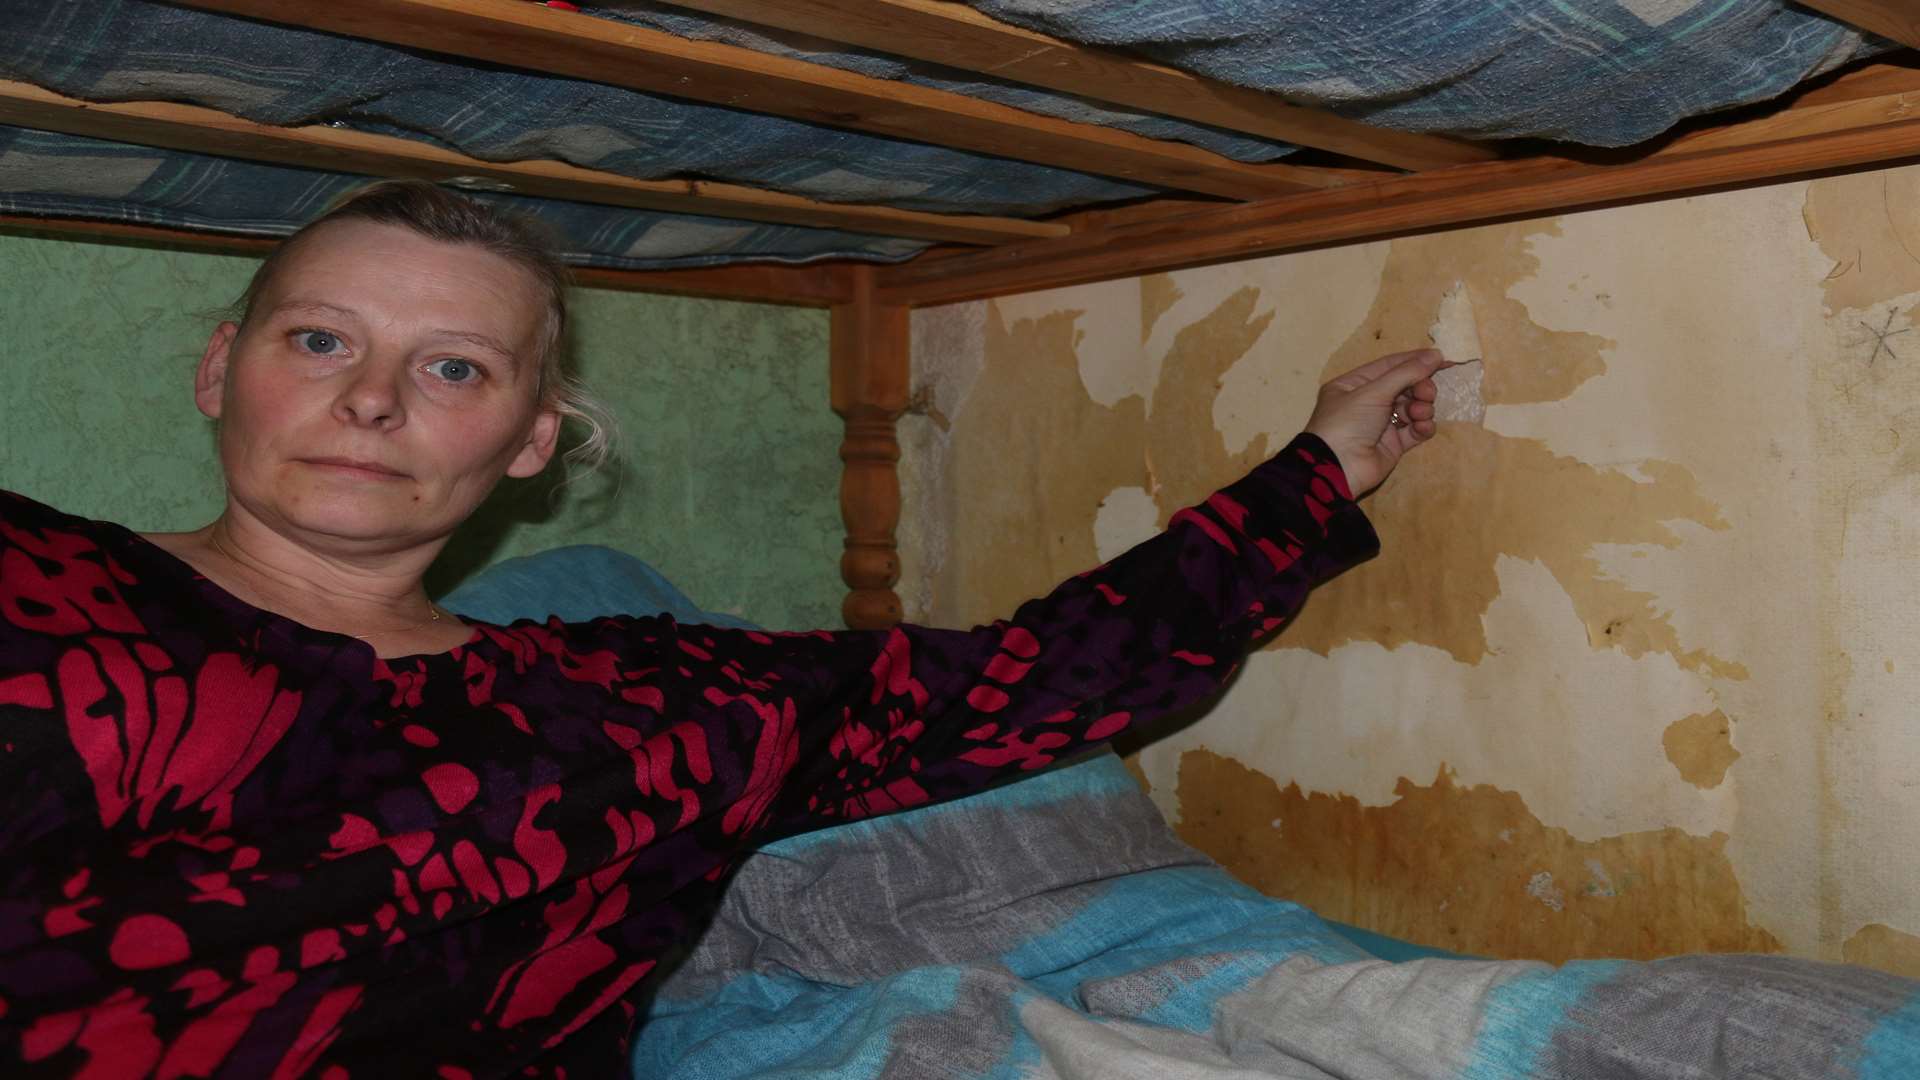 Sinead De Lobel in her eldest son's bedroom with damp, peeling wallpaper and bare walls